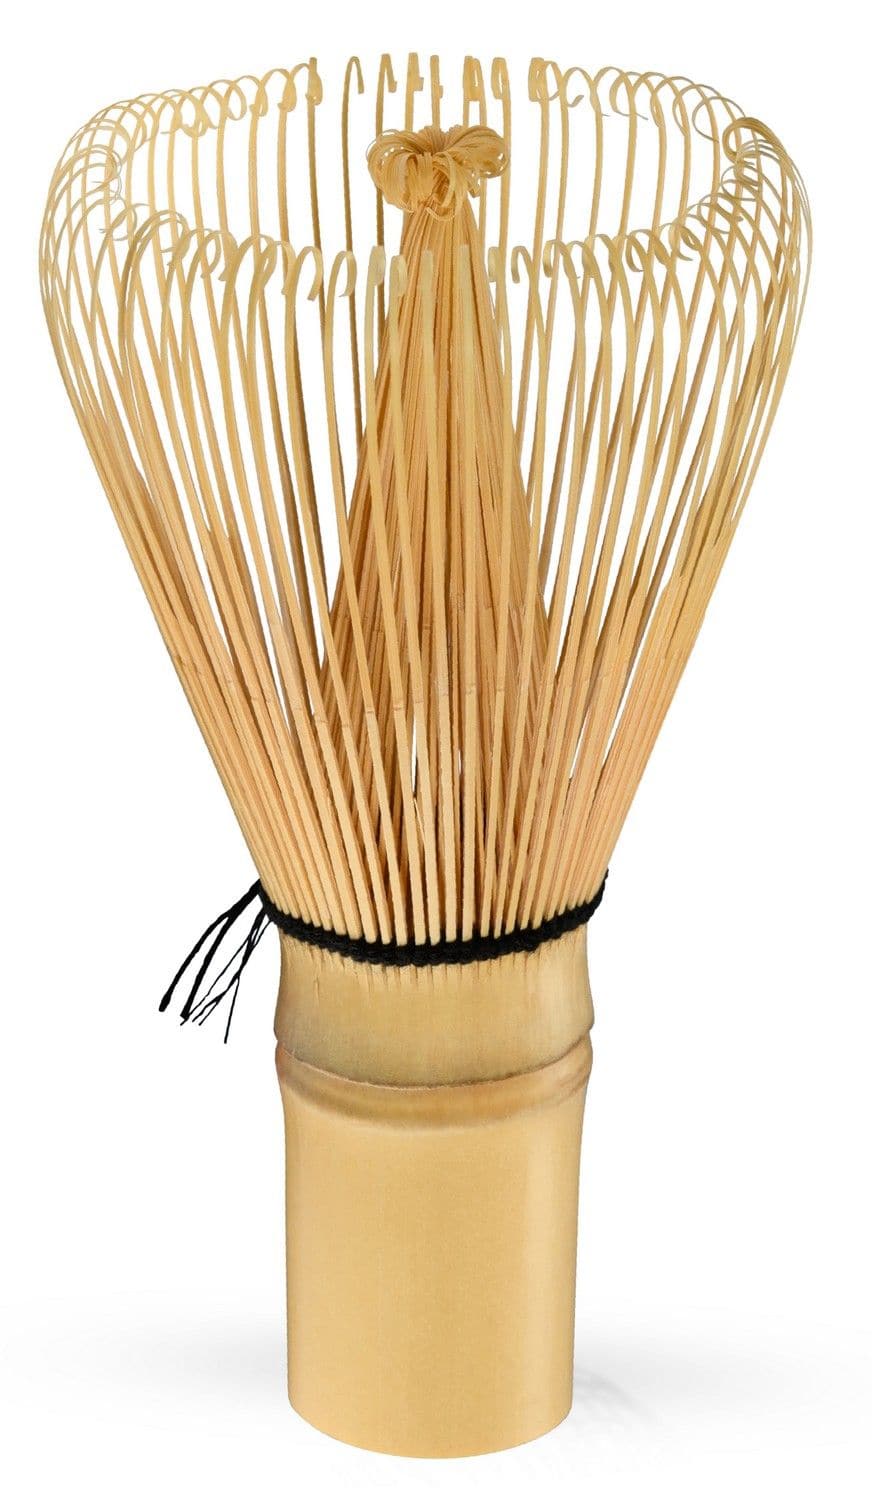 Chasen - Bamboo Whisk